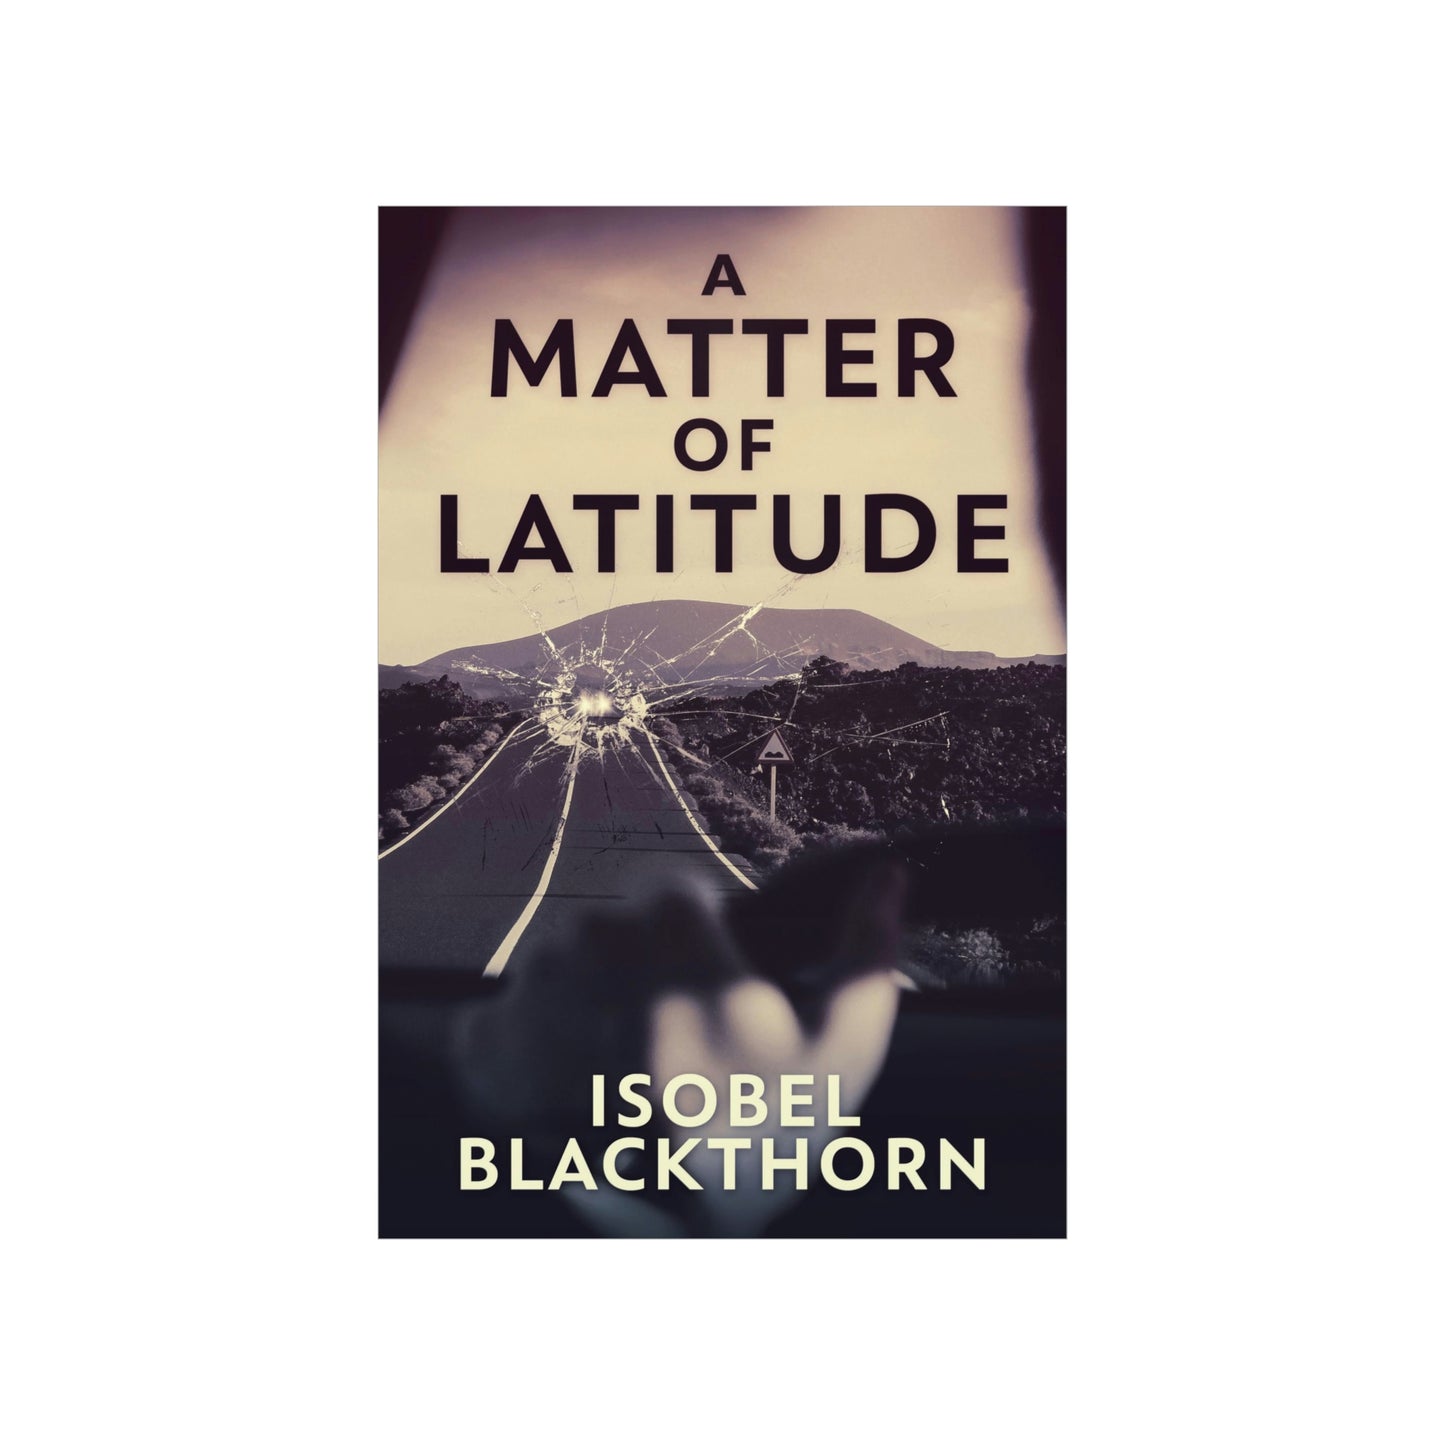 A Matter of Latitude - Matte Poster